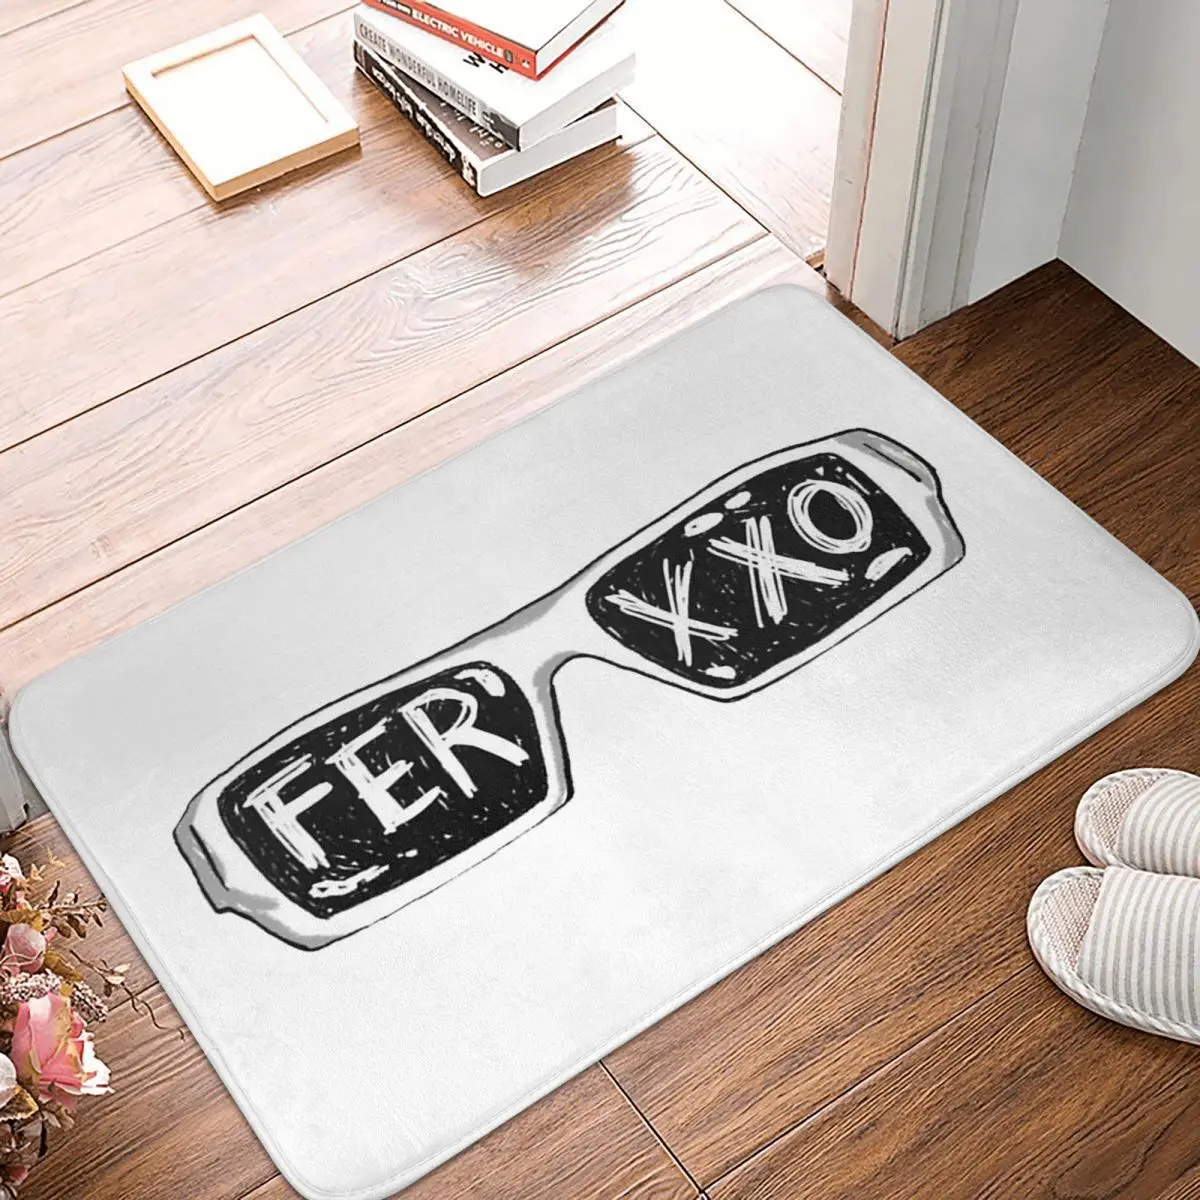 

Очки Ferxxo с логотипом фэнд, Противоскользящий коврик, напольный коврик, моющийся ковер для кухни, дома, балкона, коврики для ног